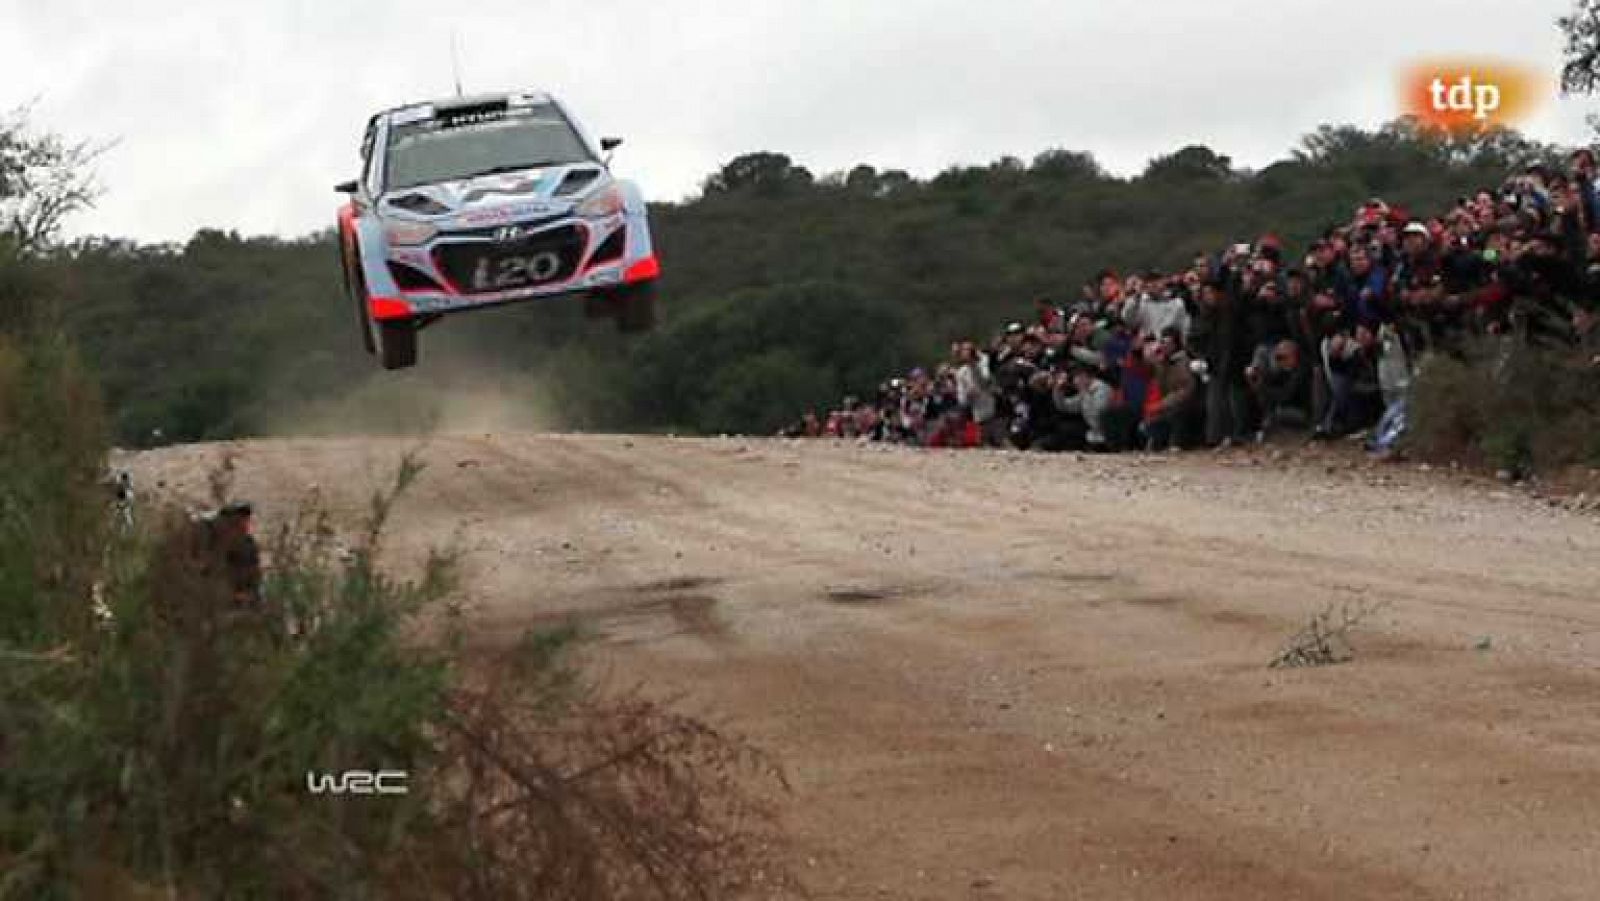 Automovilismo - Campeonato del mundo 'Rallye Argentina' - Resumen 2ª jornada